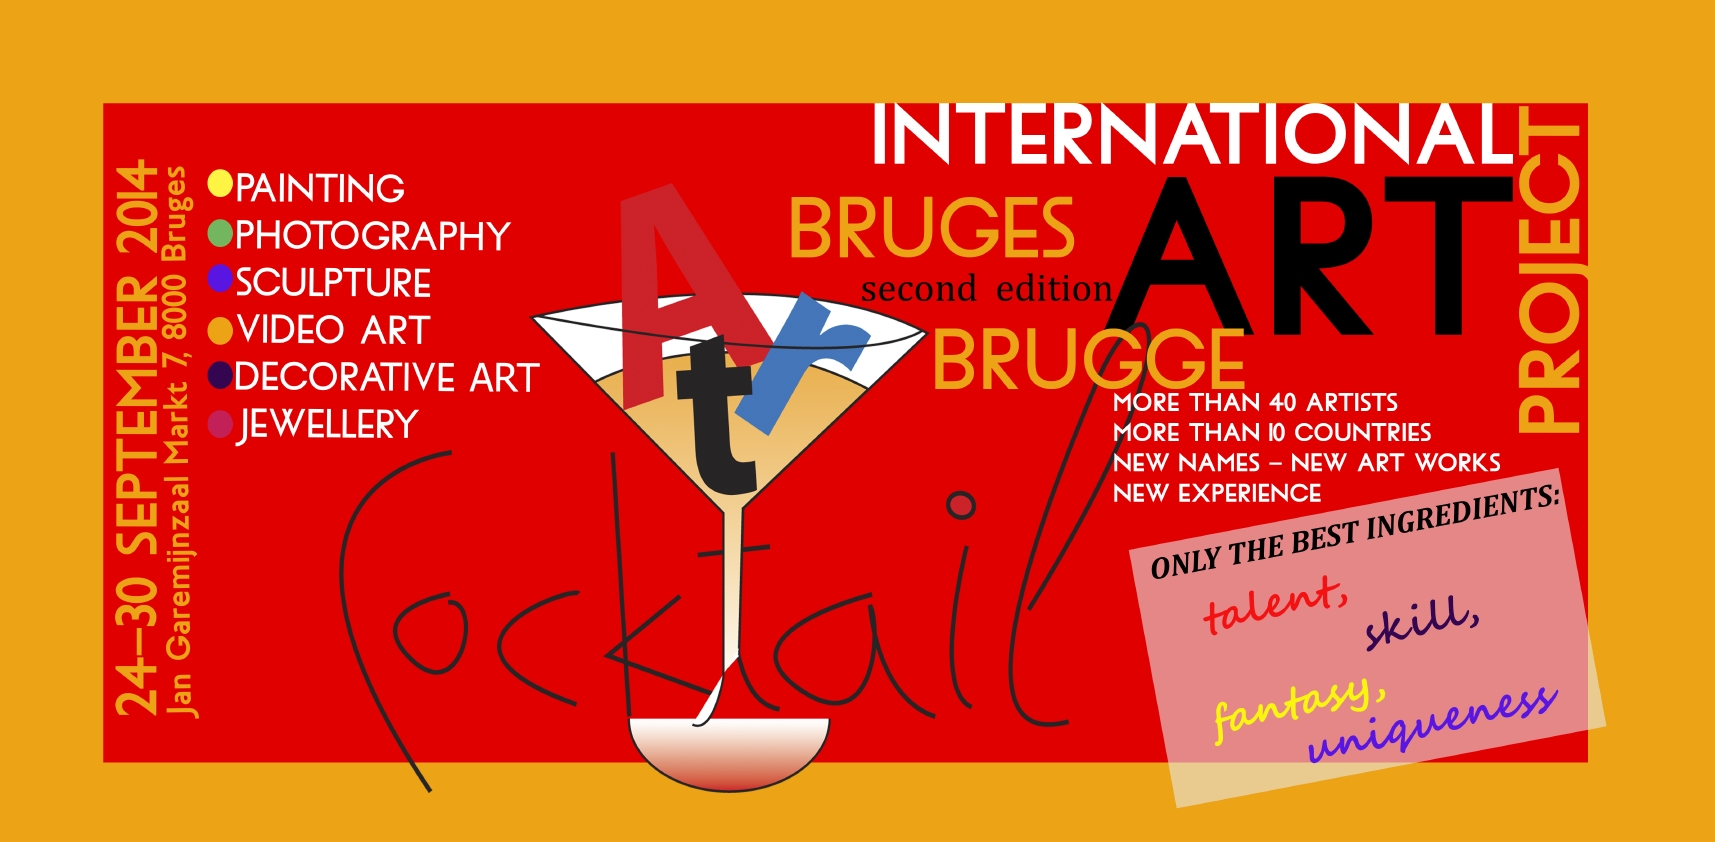 Invitation. D.E.V.E. Art Cocktail Brugge. Talent, skill, fantasy, uniqueness. 2014-09-24